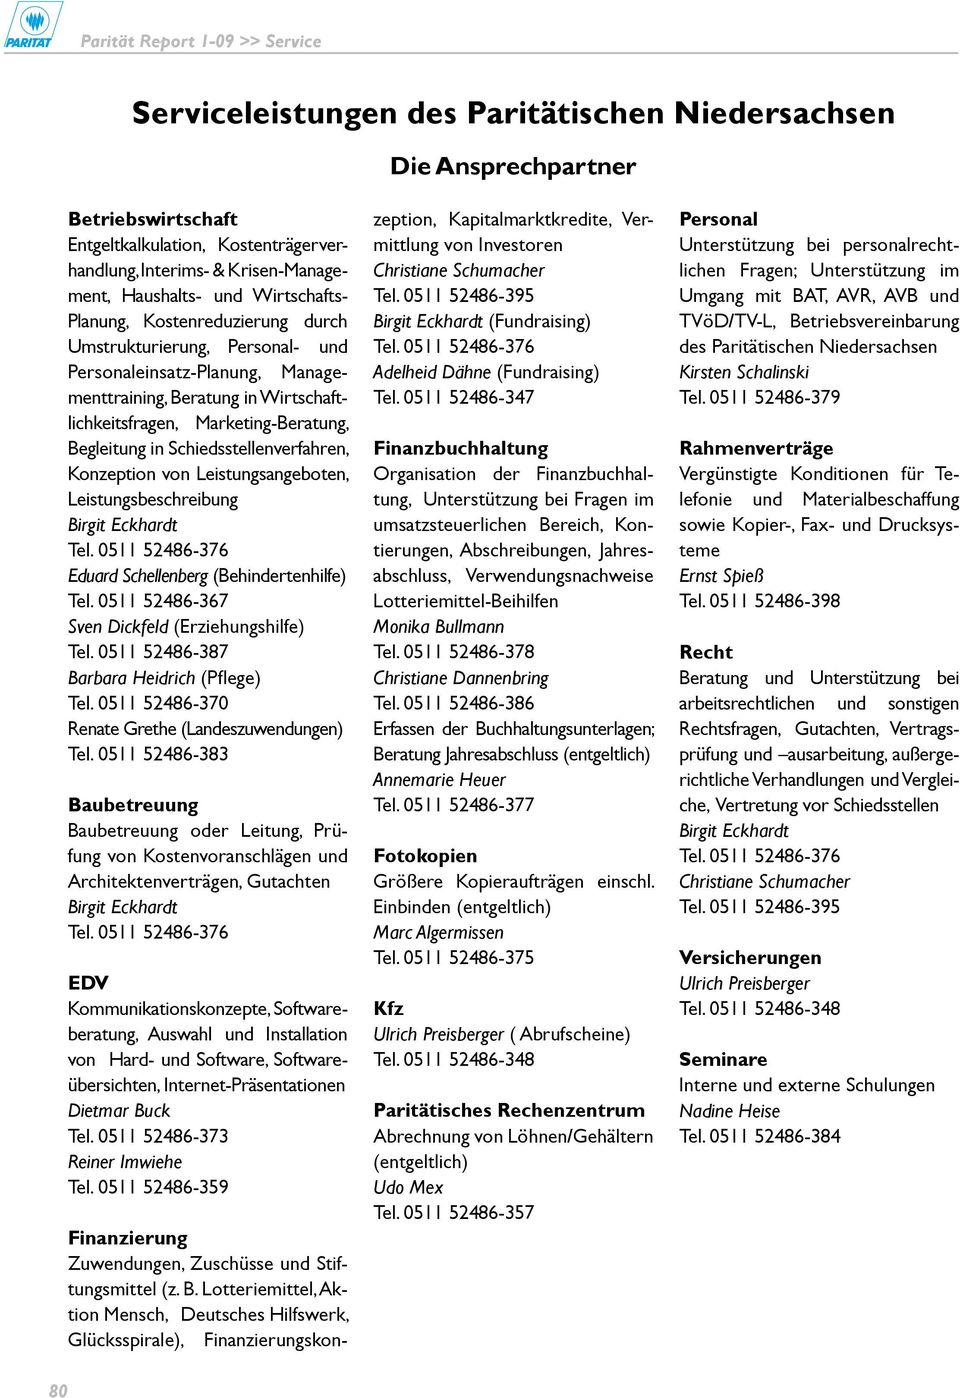 Schiedsstellenverfahren, Konzeption von Leistungsangeboten, Leistungsbeschreibung Eduard Schellenberg (Behindertenhilfe) Tel. 0511 52486-367 Sven Dickfeld (Erziehungshilfe) Tel.